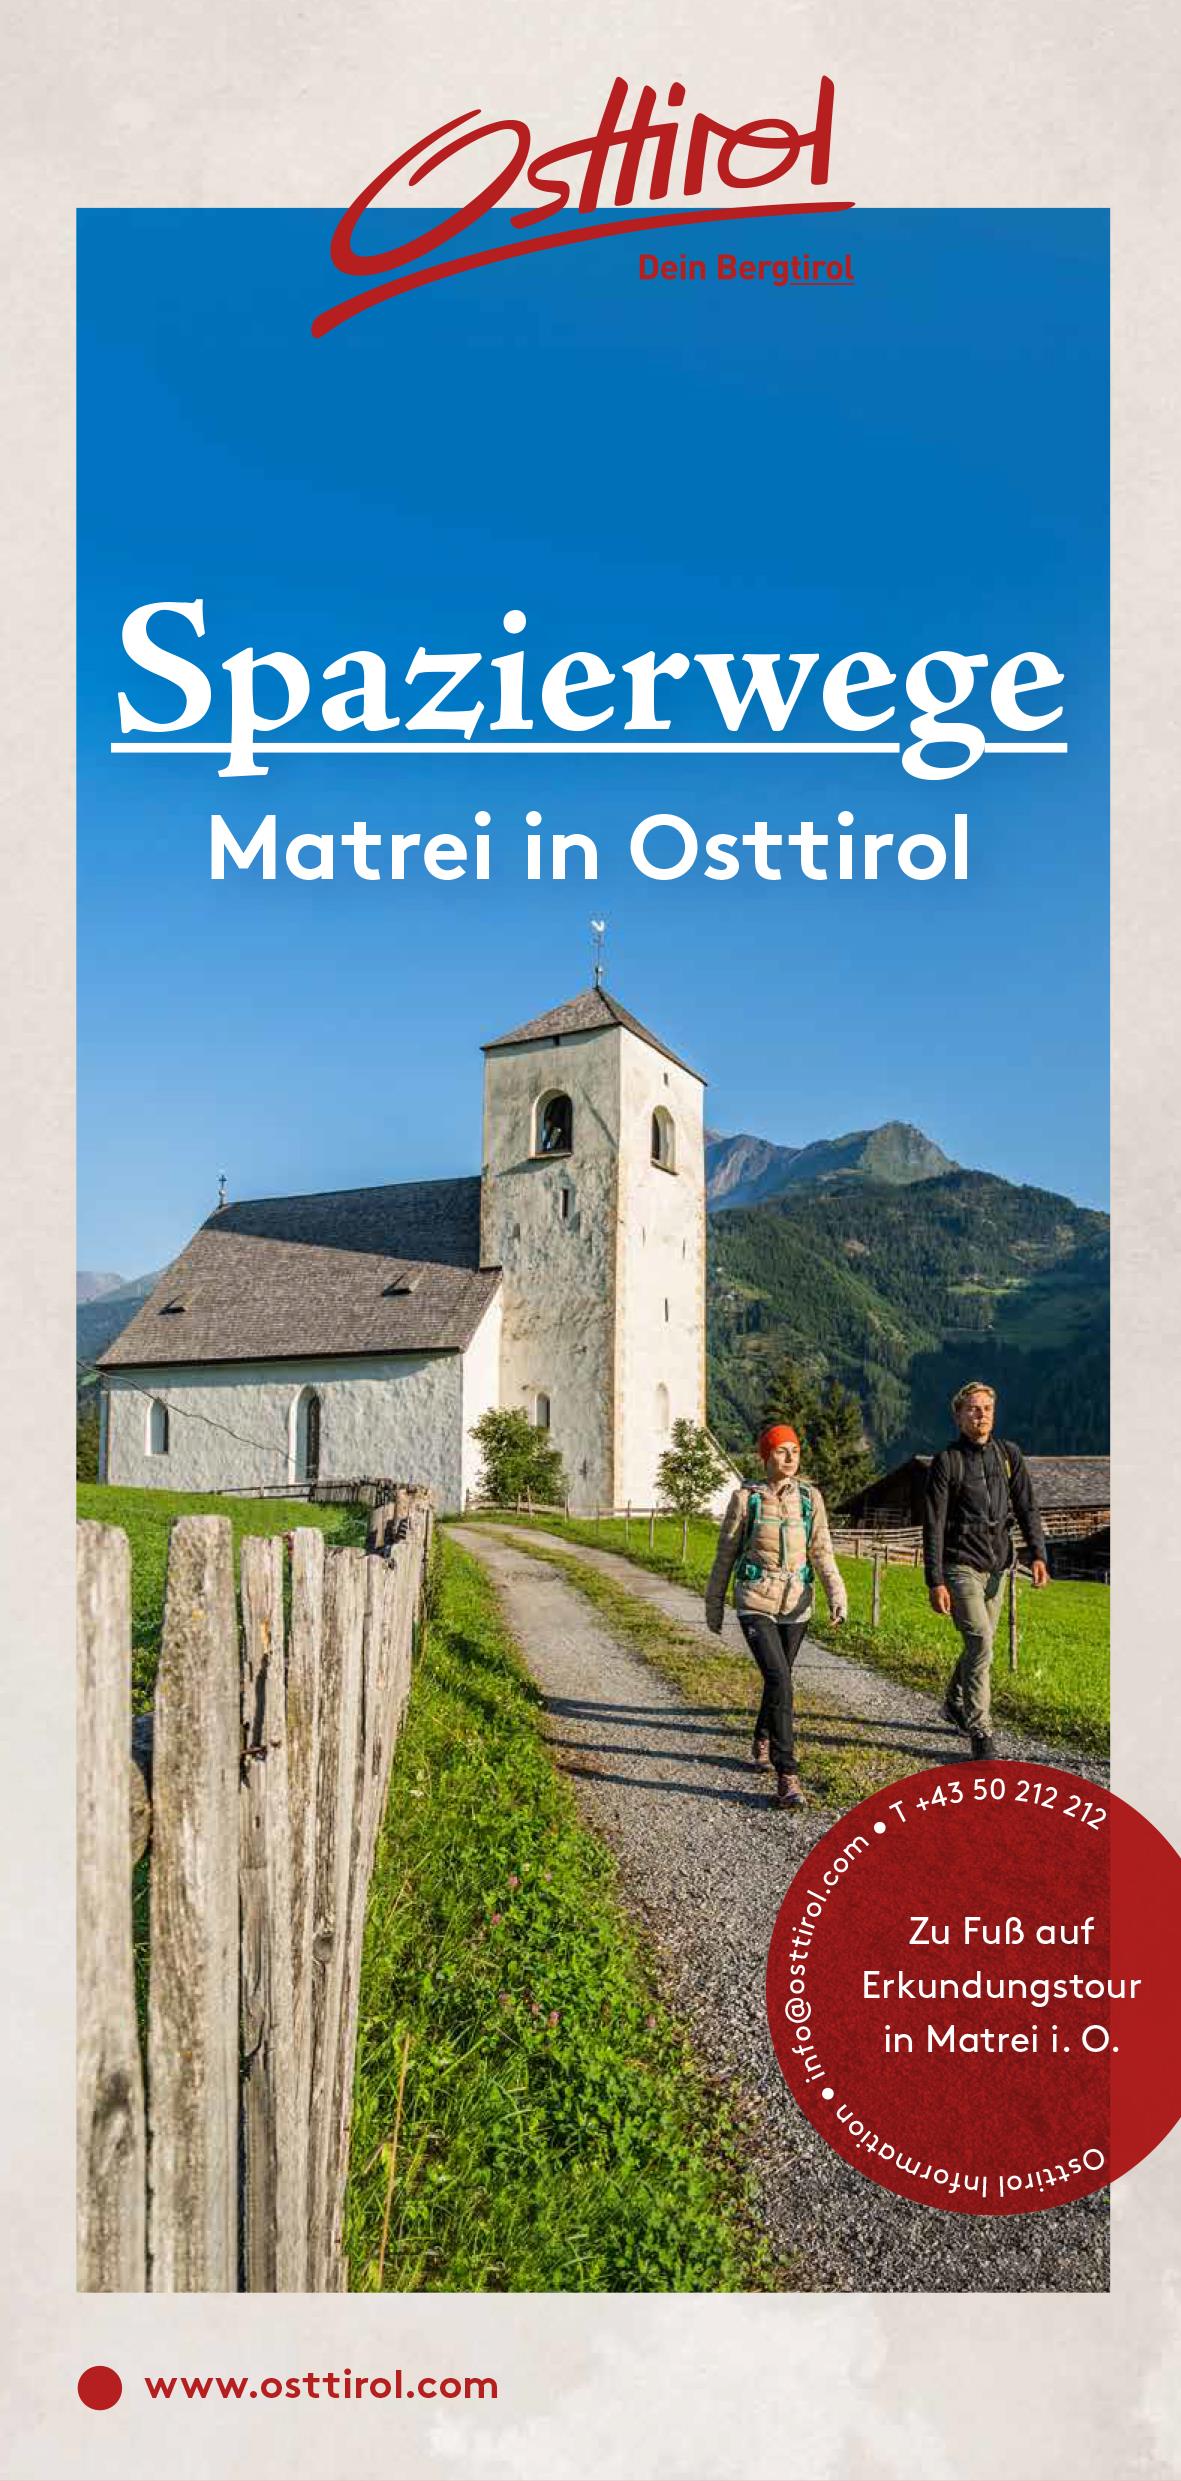 Spazierwege-Matre-in-Osttirol.jpg